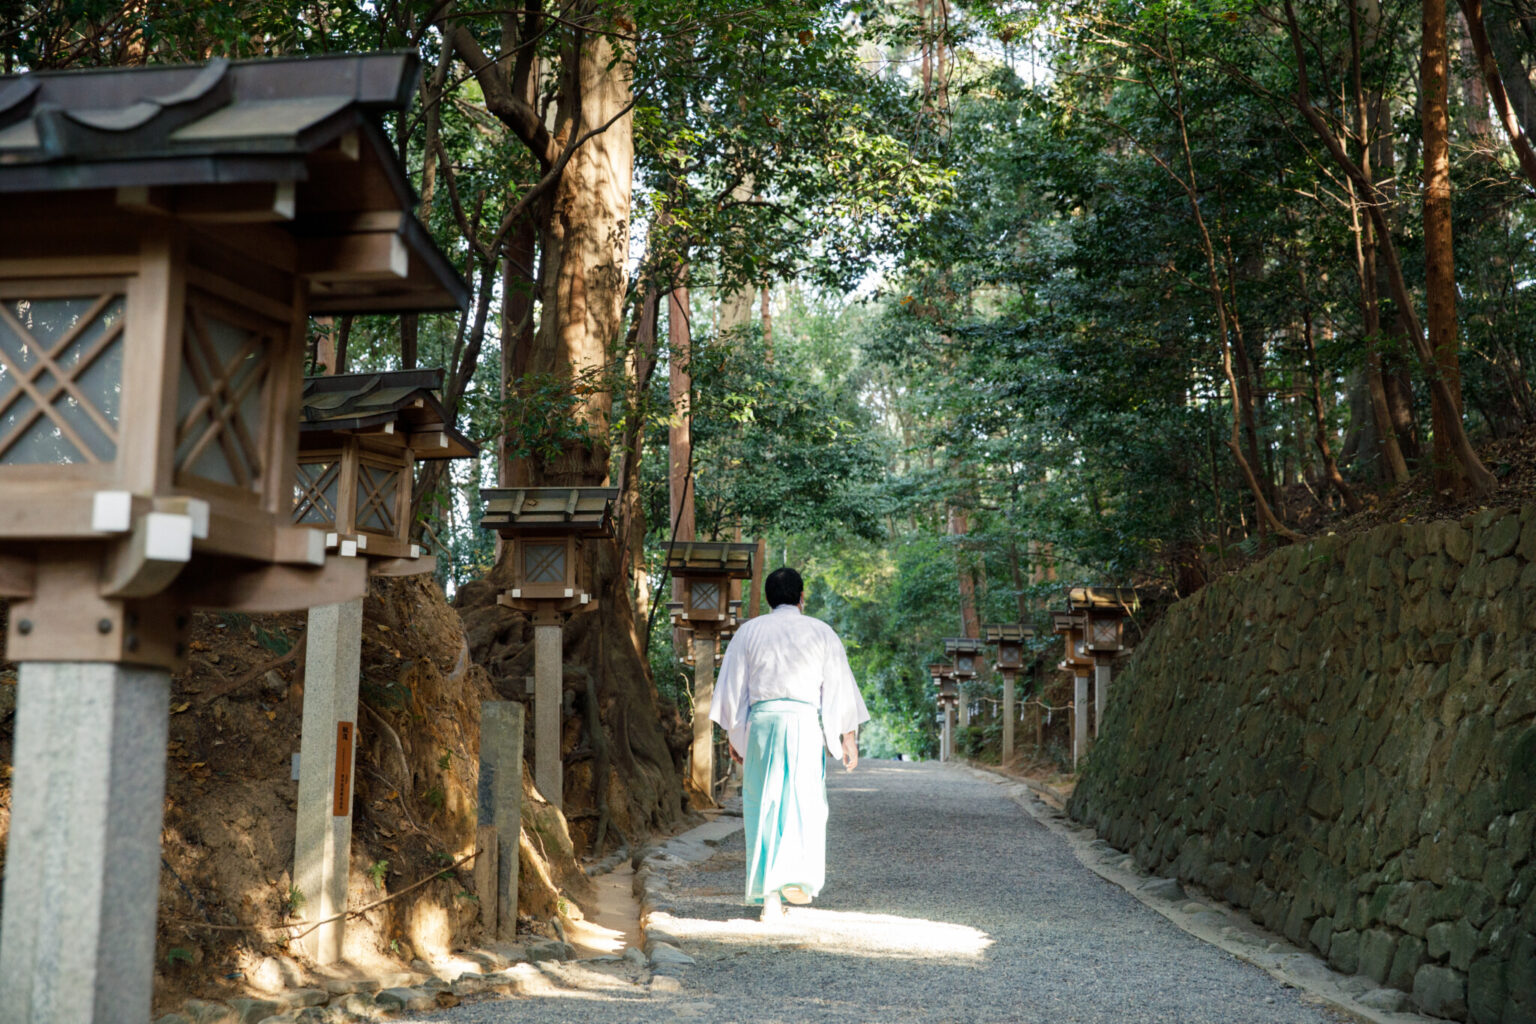 狭井神社へ向かう参道は両脇に薬木・薬草が植えられた「くすり道」となっている。